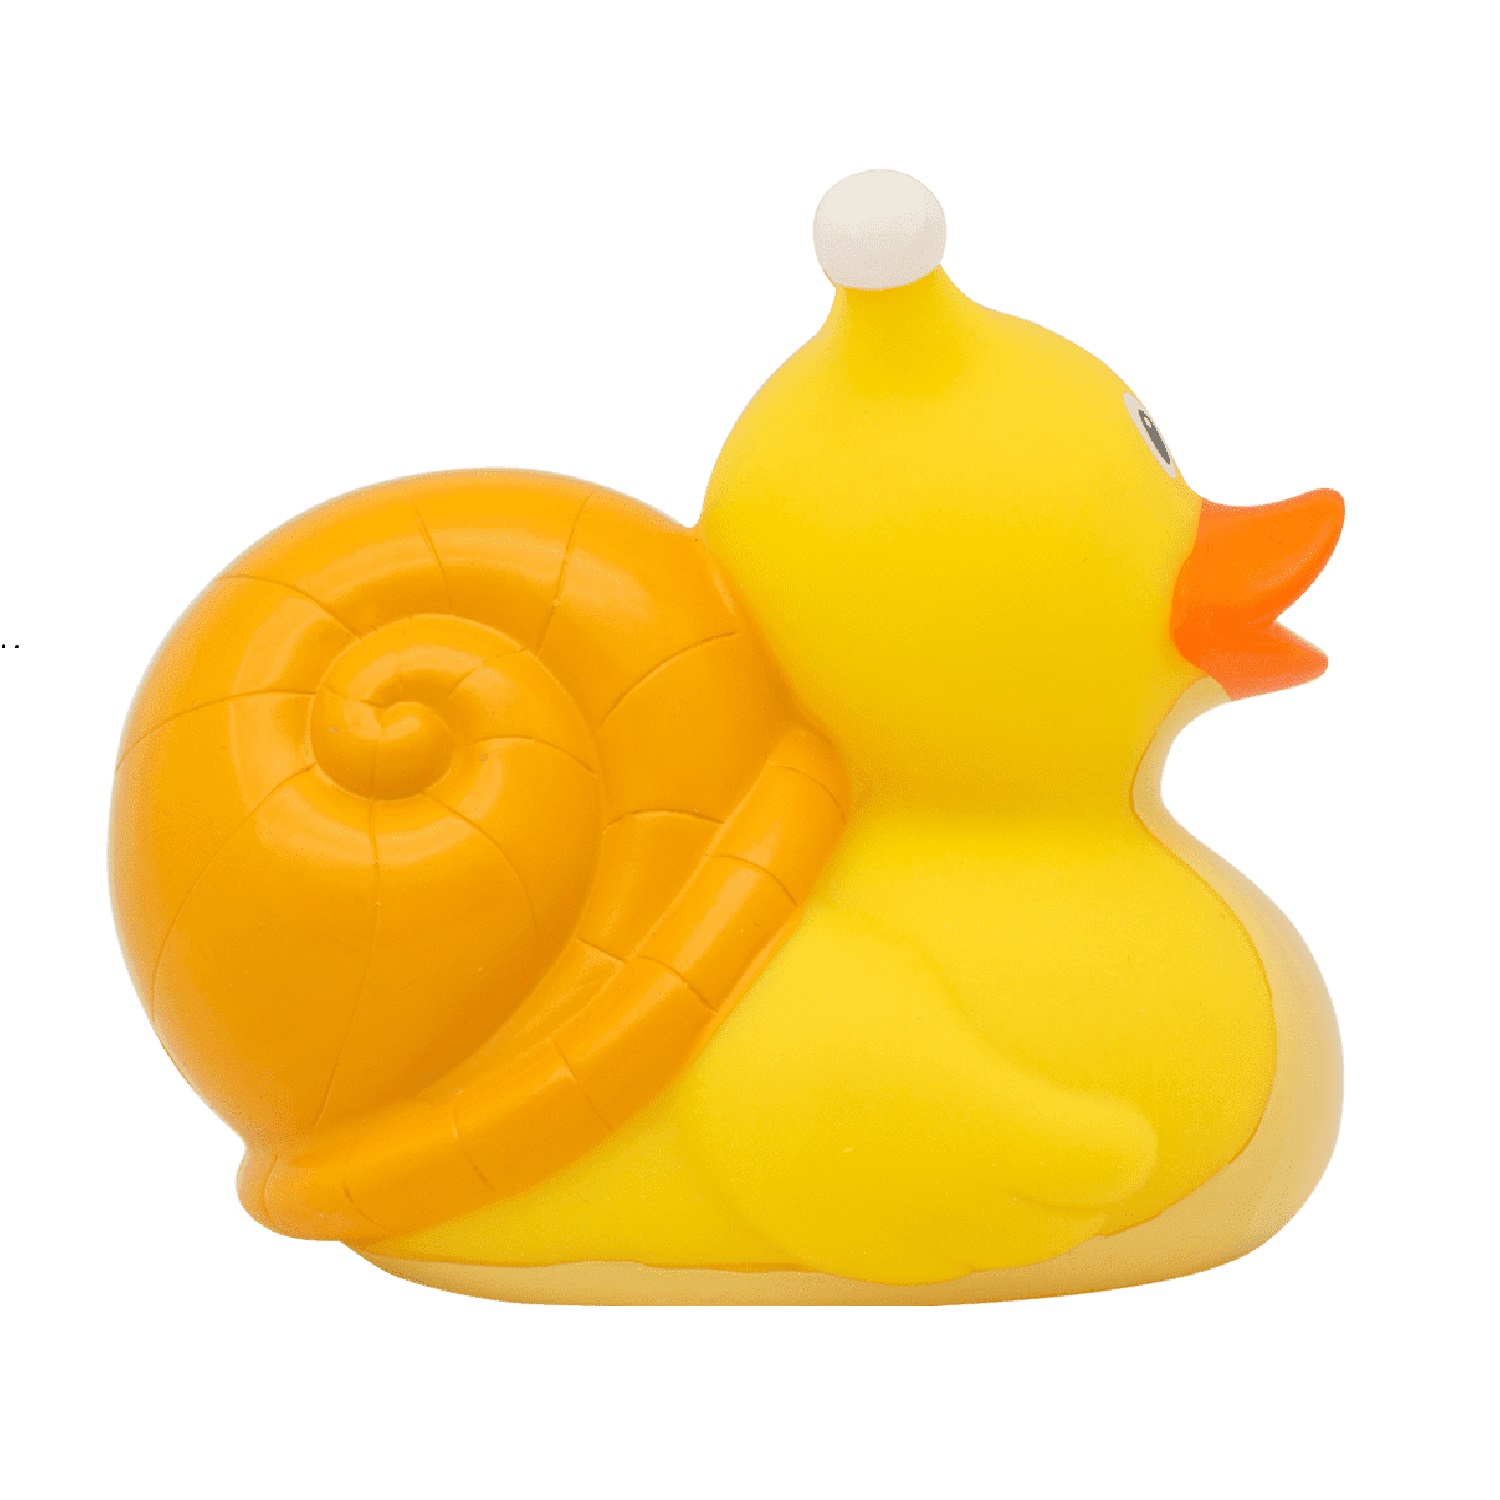 Игрушка Funny ducks для ванной Улитка уточка 1219 - фото 3